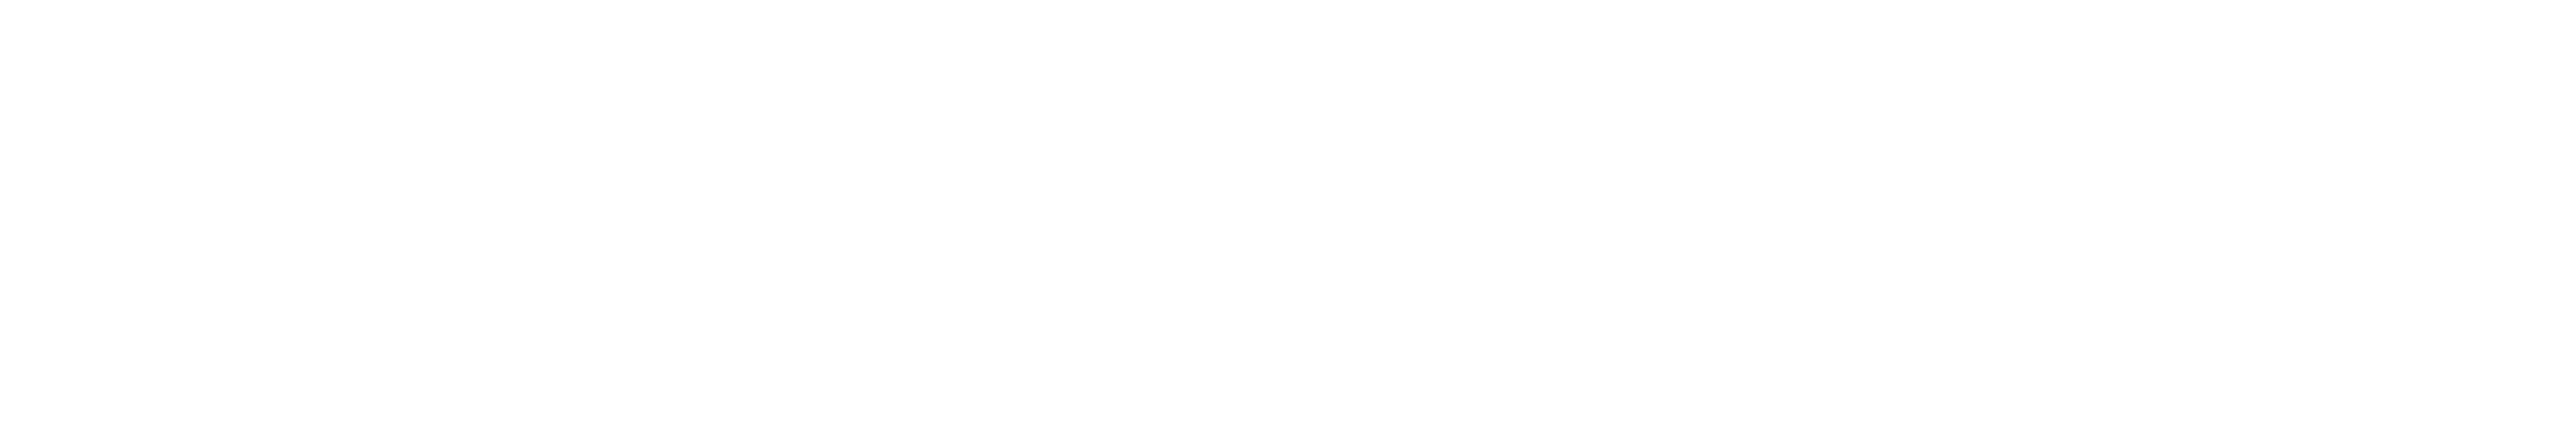 Logo La Mère Maquerelle